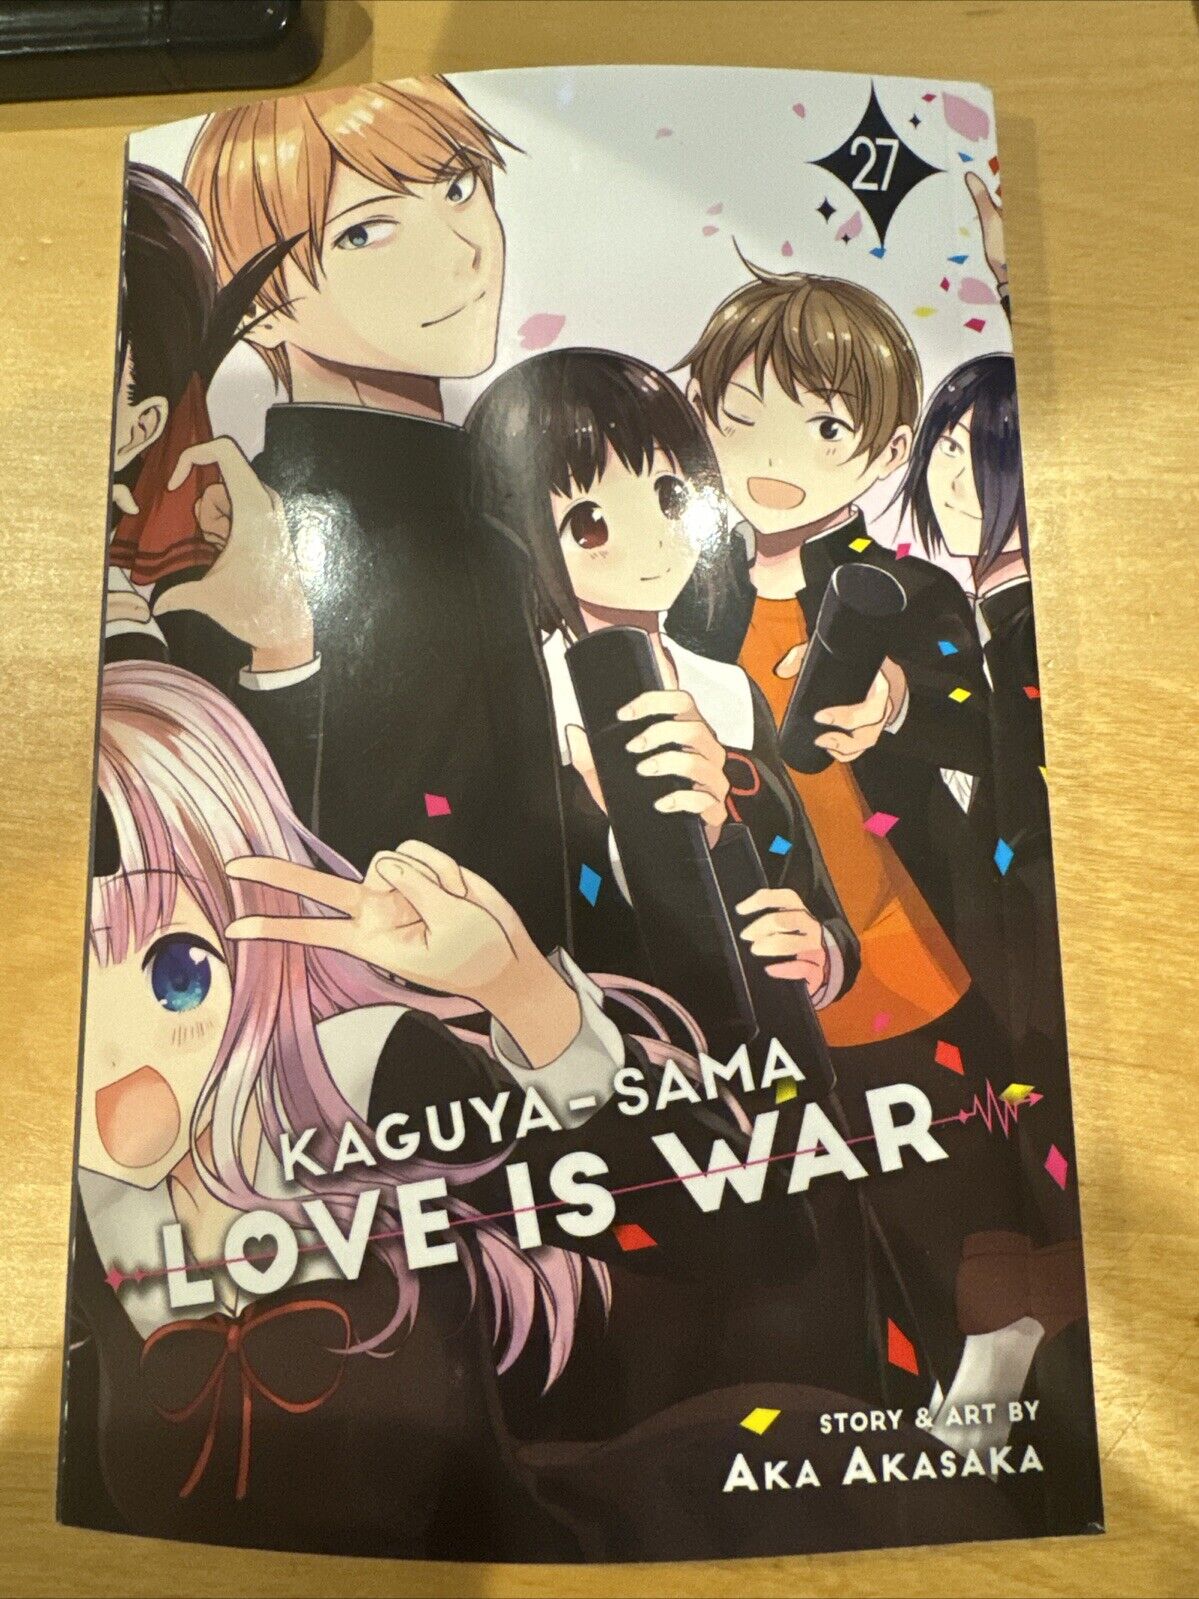 Kaguya-sama: Love Is War, Vol. 27 Manga